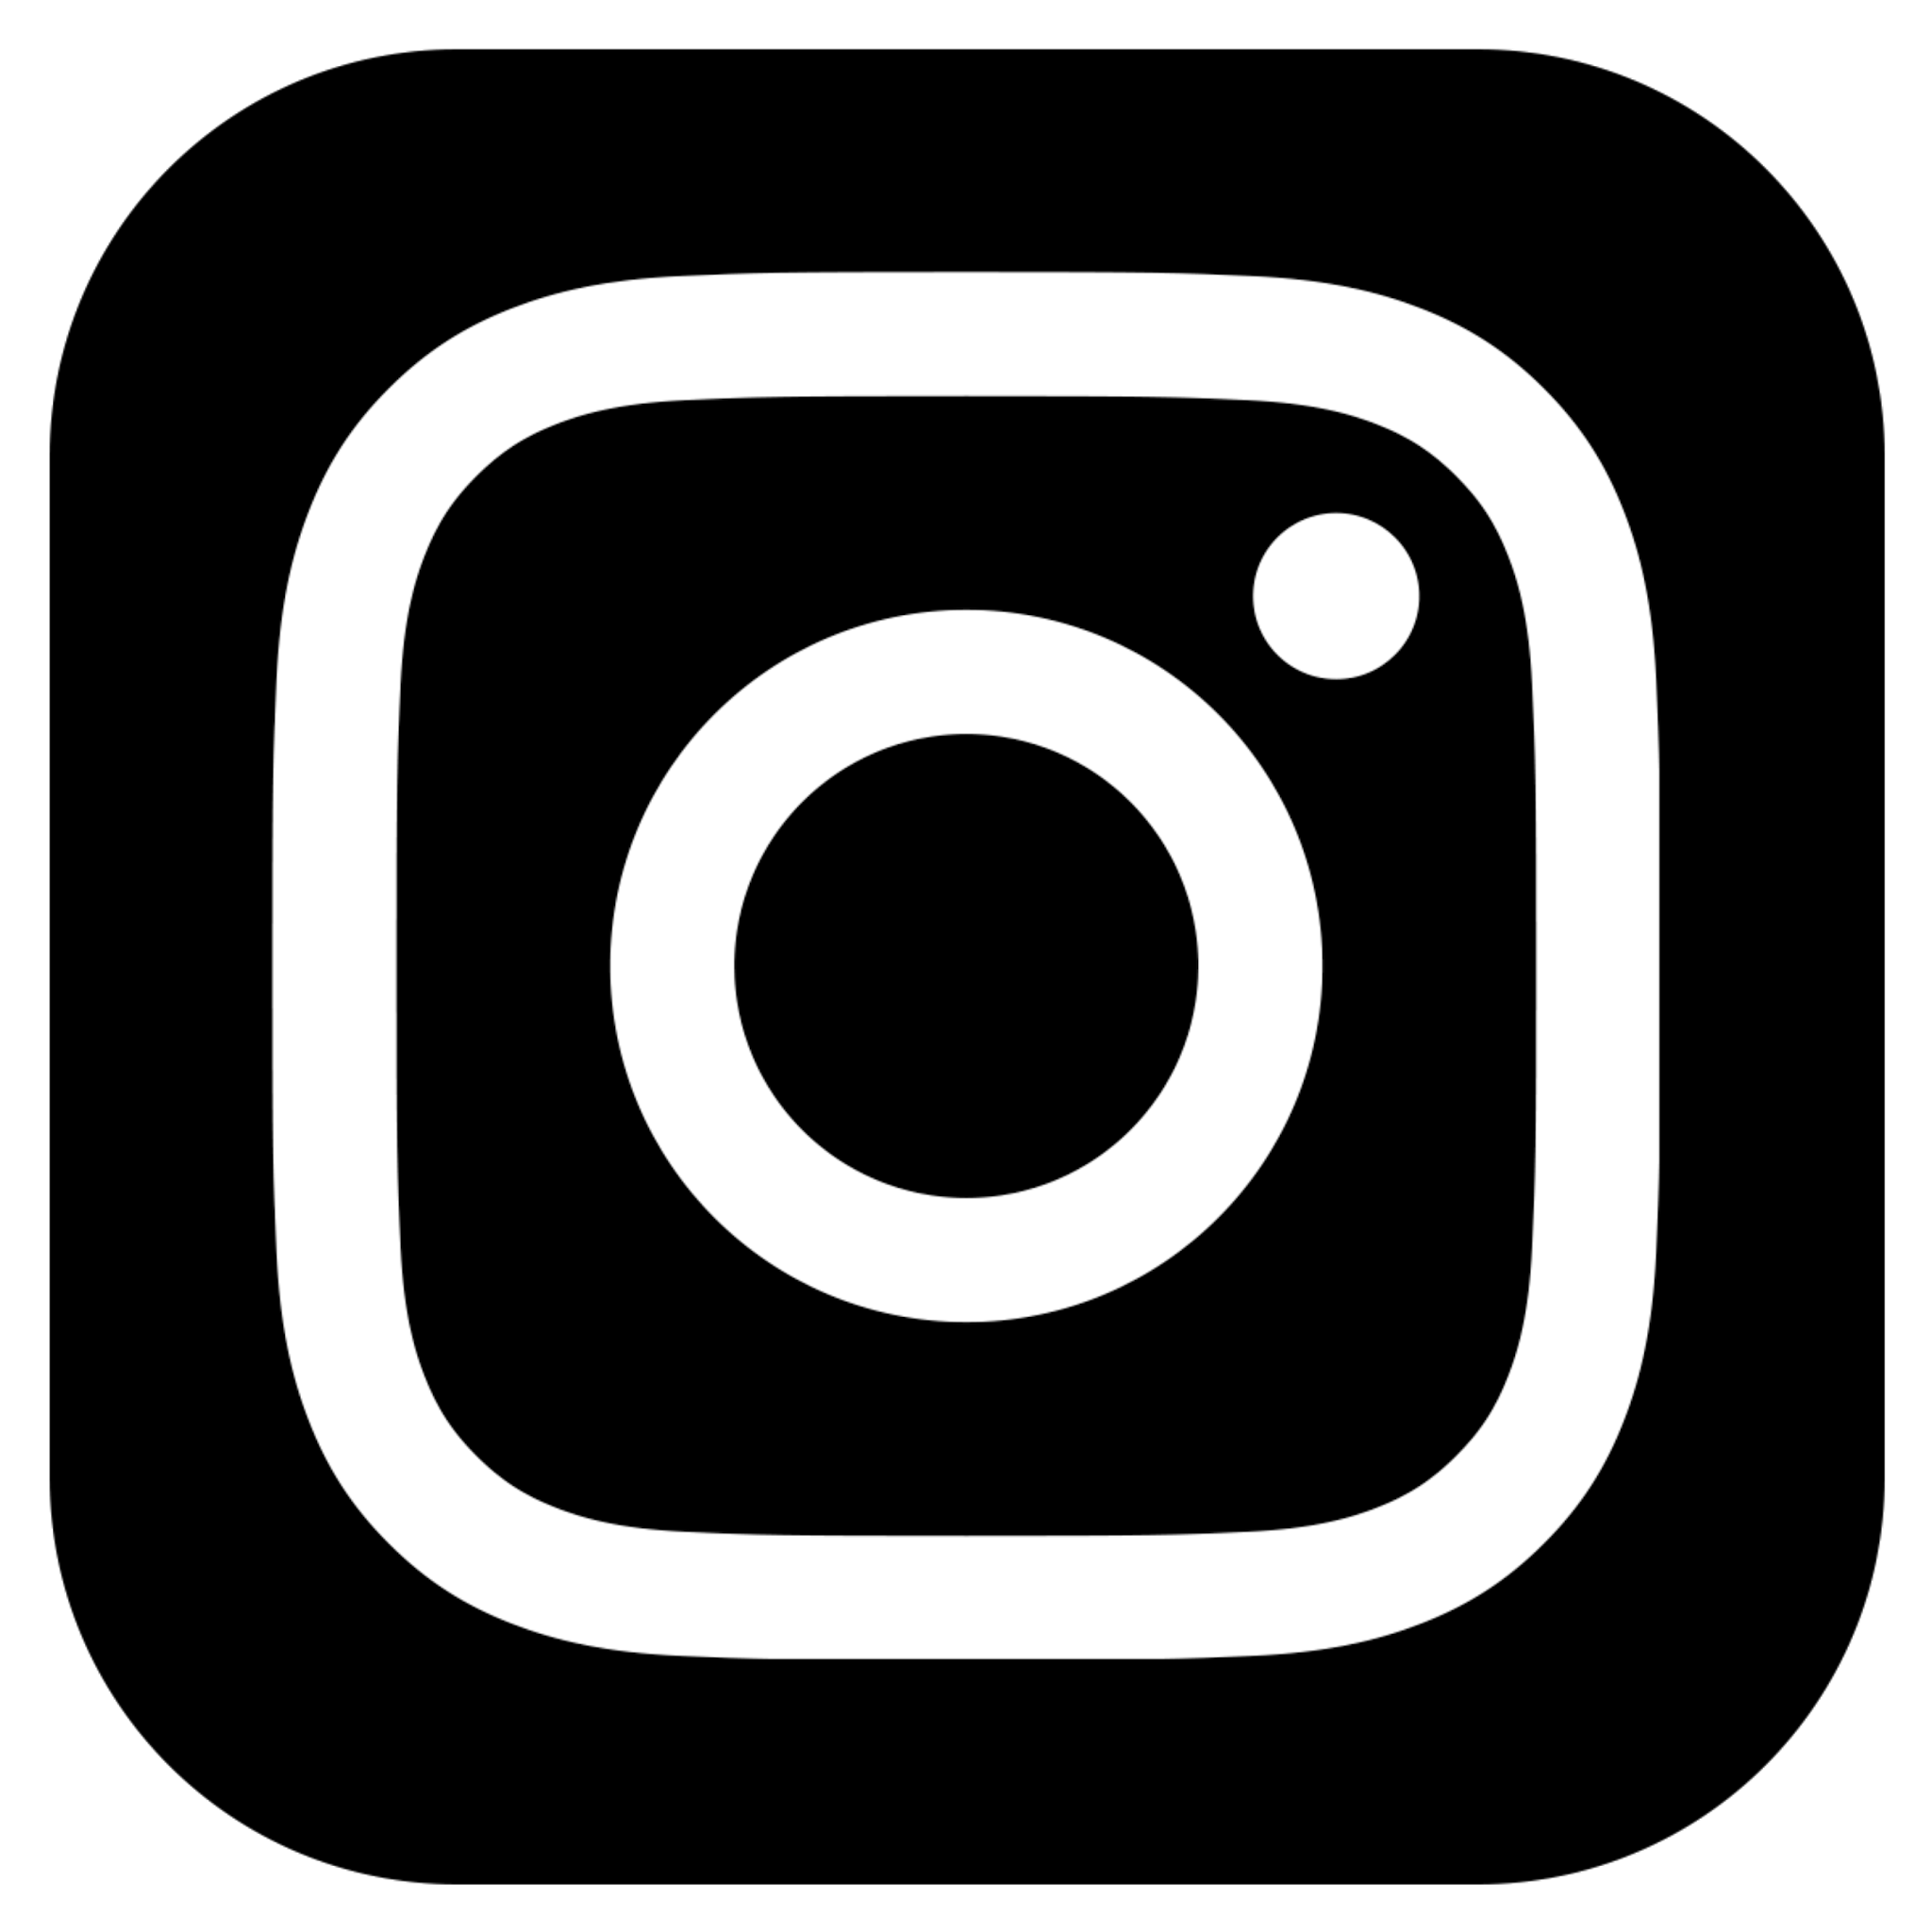  Logo  Instagram  hitam  png cocok untuk desain Yogiancreative